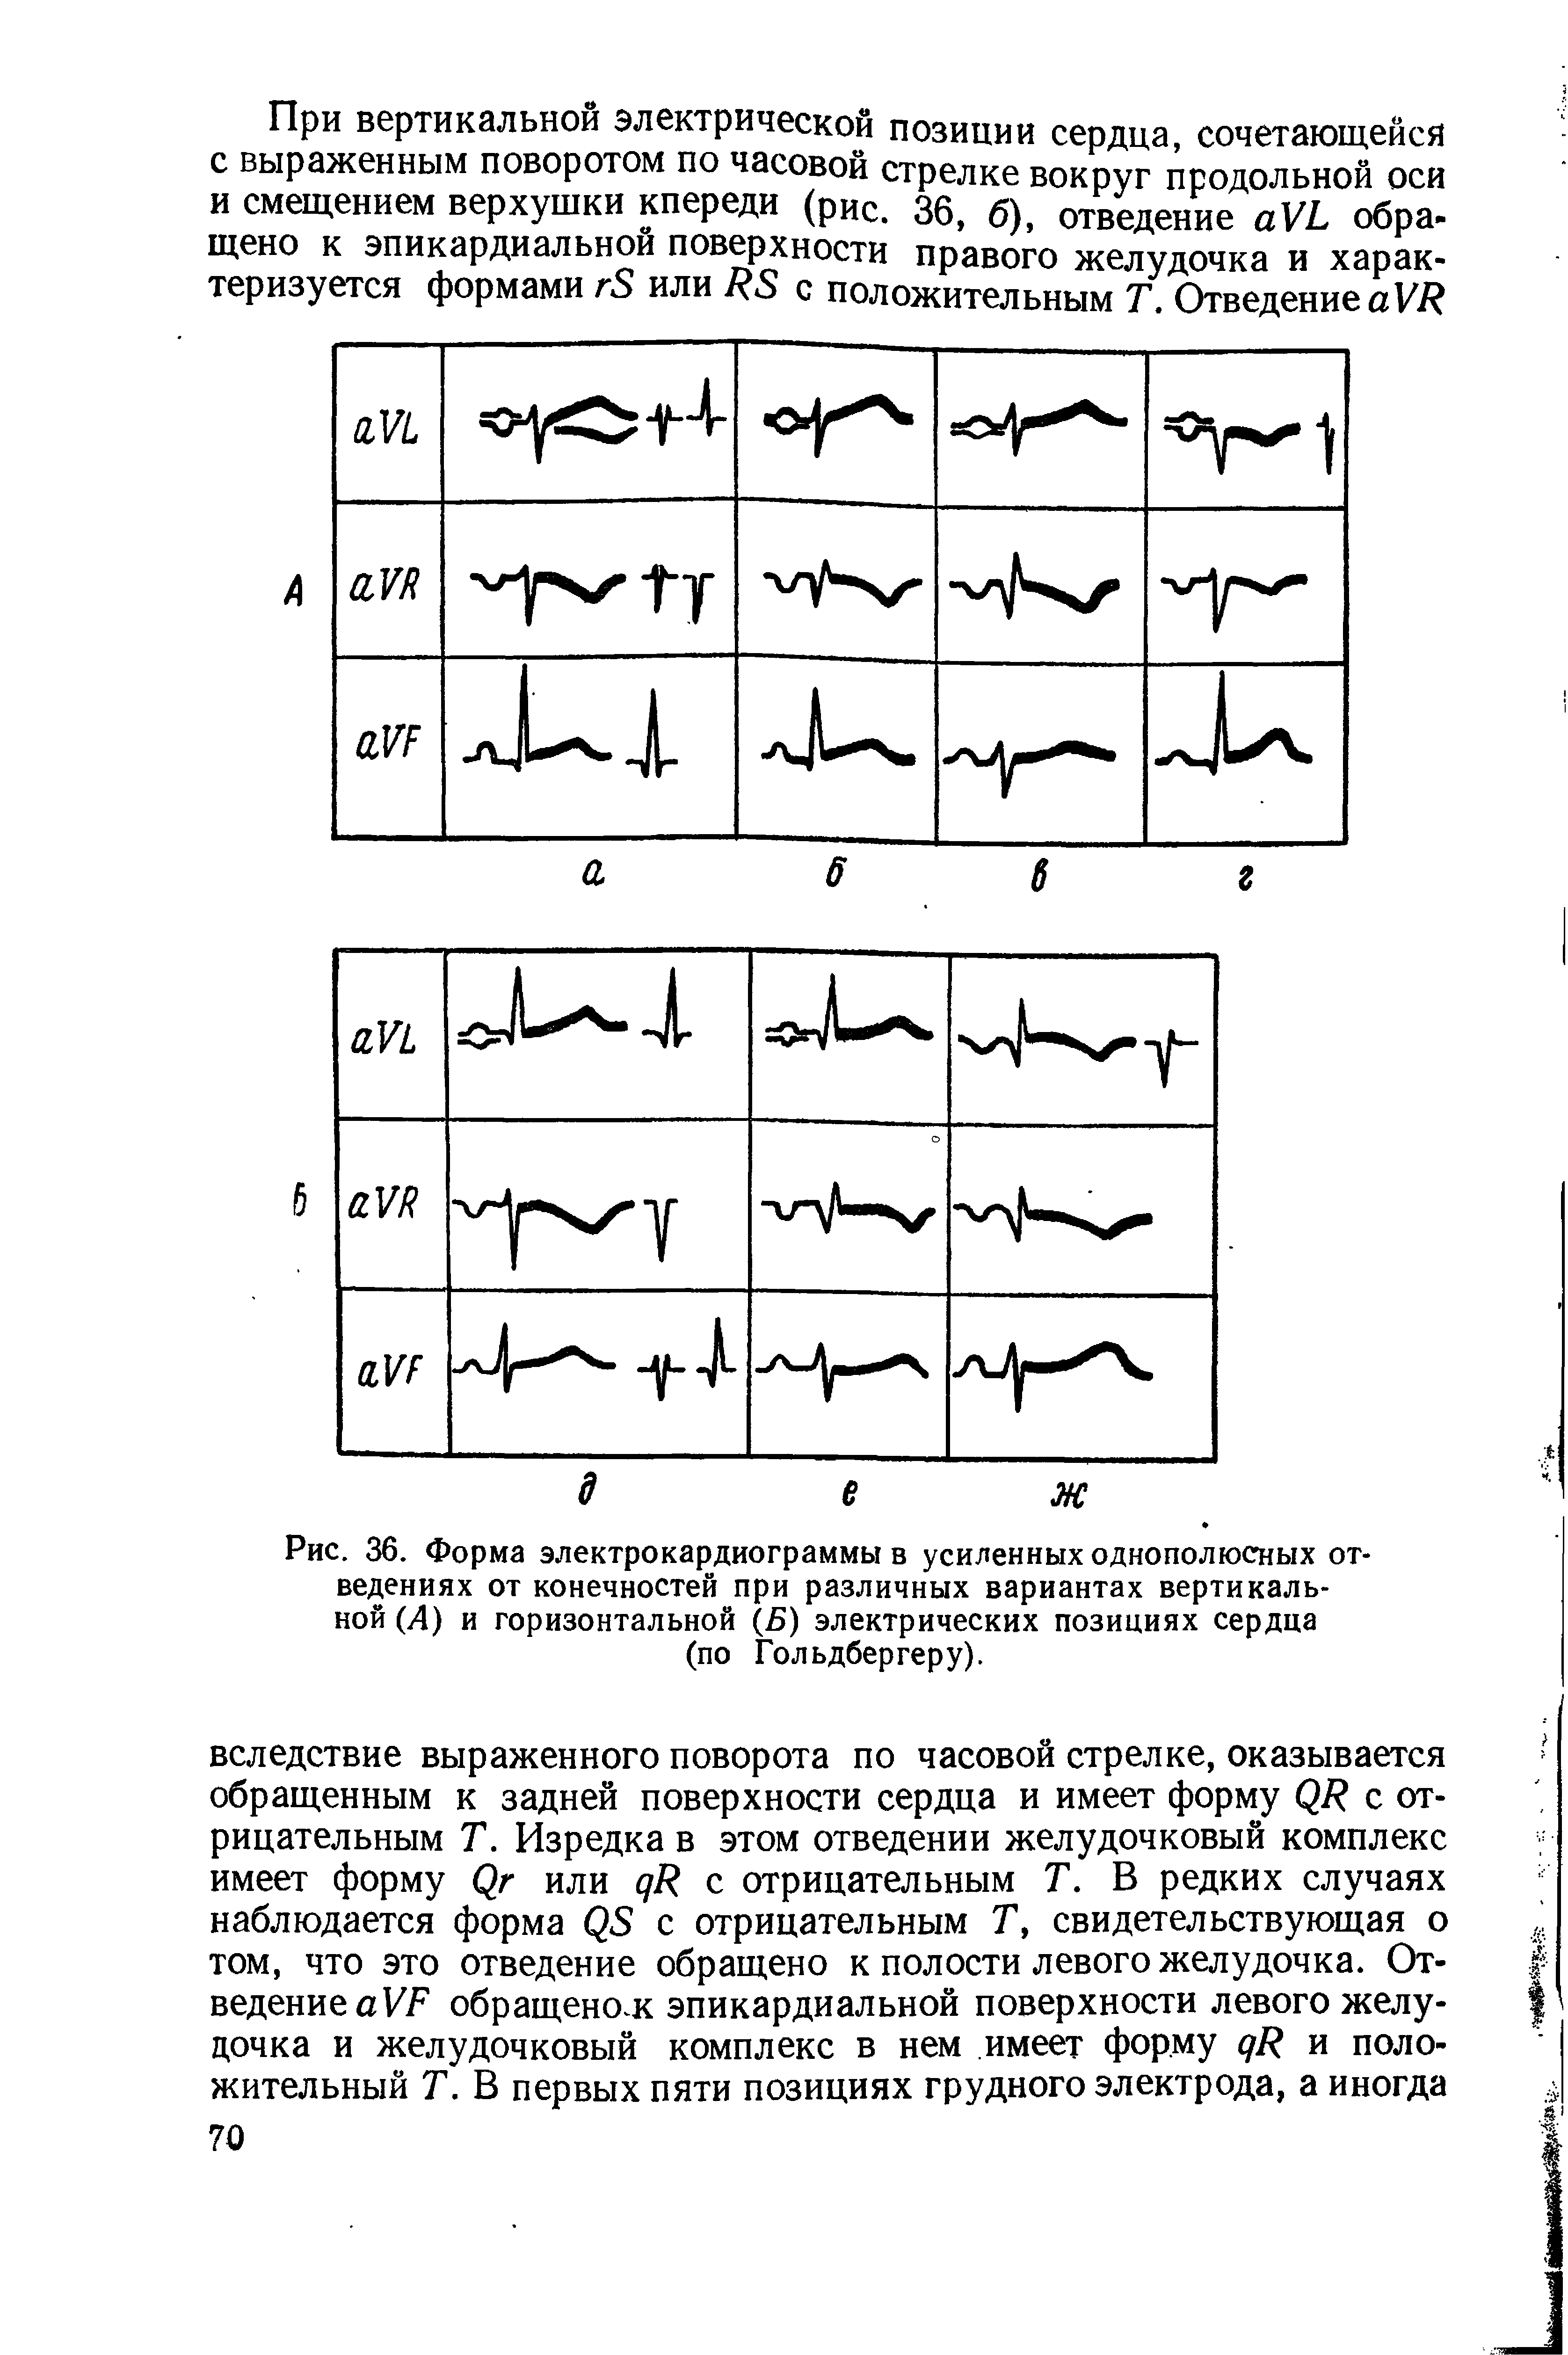 Рис. 36. Форма электрокардиограммы в усиленных однополюсных отведениях от конечностей при различных вариантах вертикальной (А) и горизонтальной (Б) электрических позициях сердца (по Гольдбергеру).